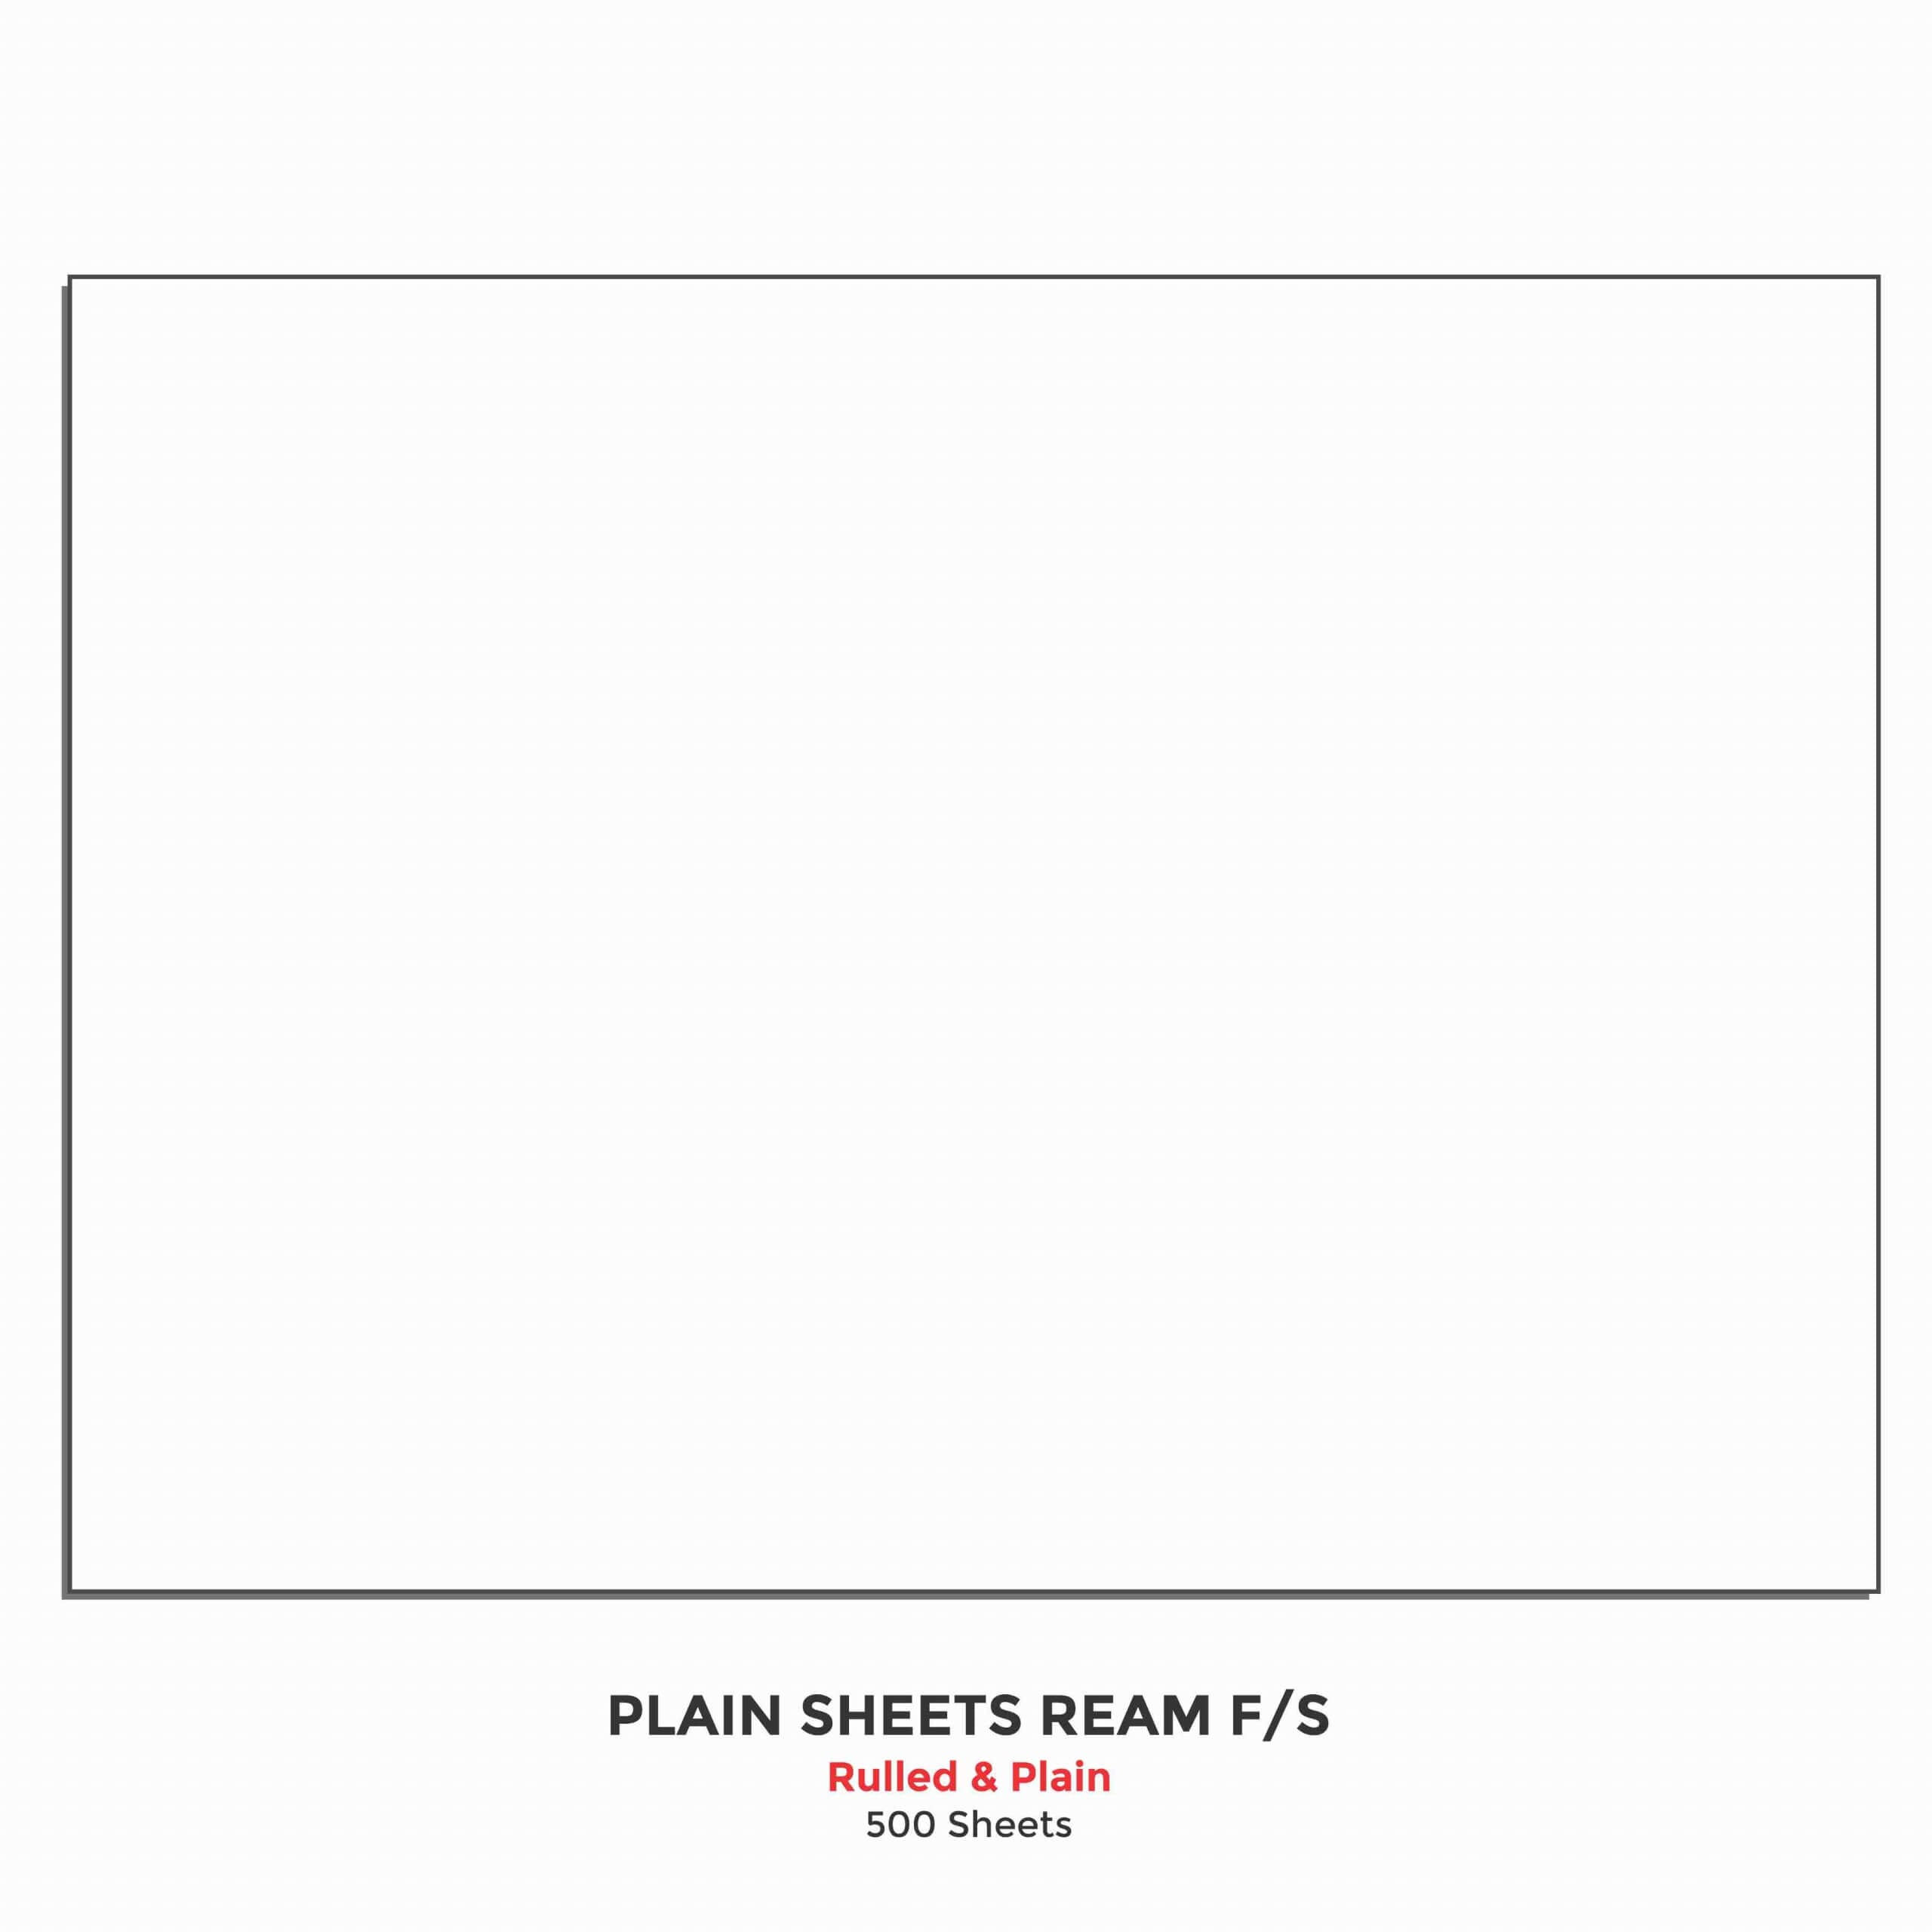 Ruled Sheets Ream F/S, 500 Sheets, (Ruled & Plain), (31.0 cm x 38.0 cm)